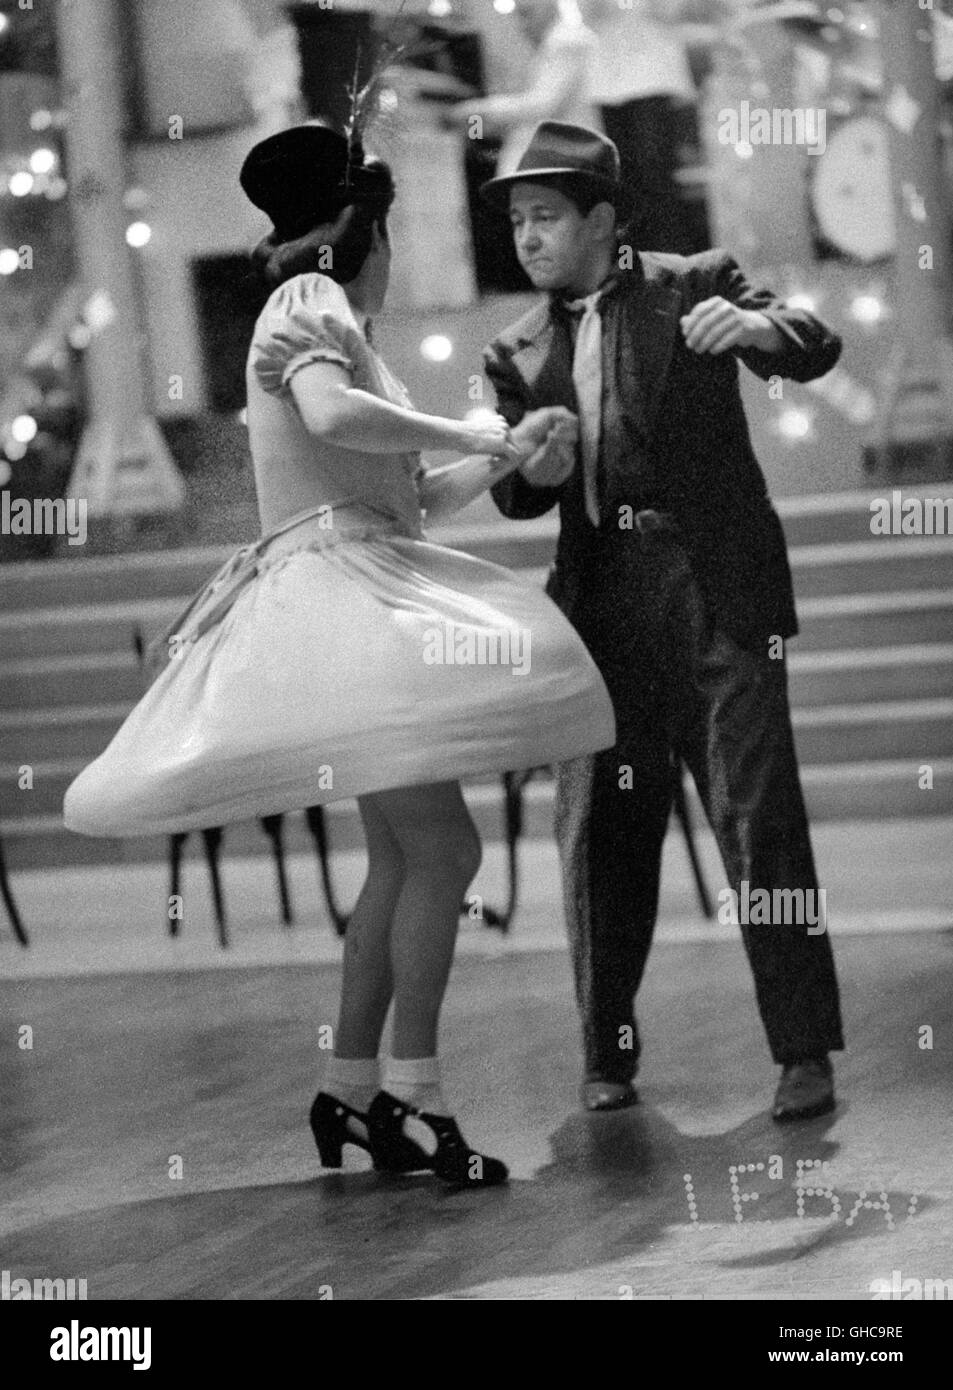 LE BAL italien Ettore Scola 1983 l'année 50 histoire d'une salle de bal en  France, depuis les années 1930 - 1980. Image : 1956 - Rock'n' Roll dancing  couple. Regie : Ettore Scola Photo Stock - Alamy